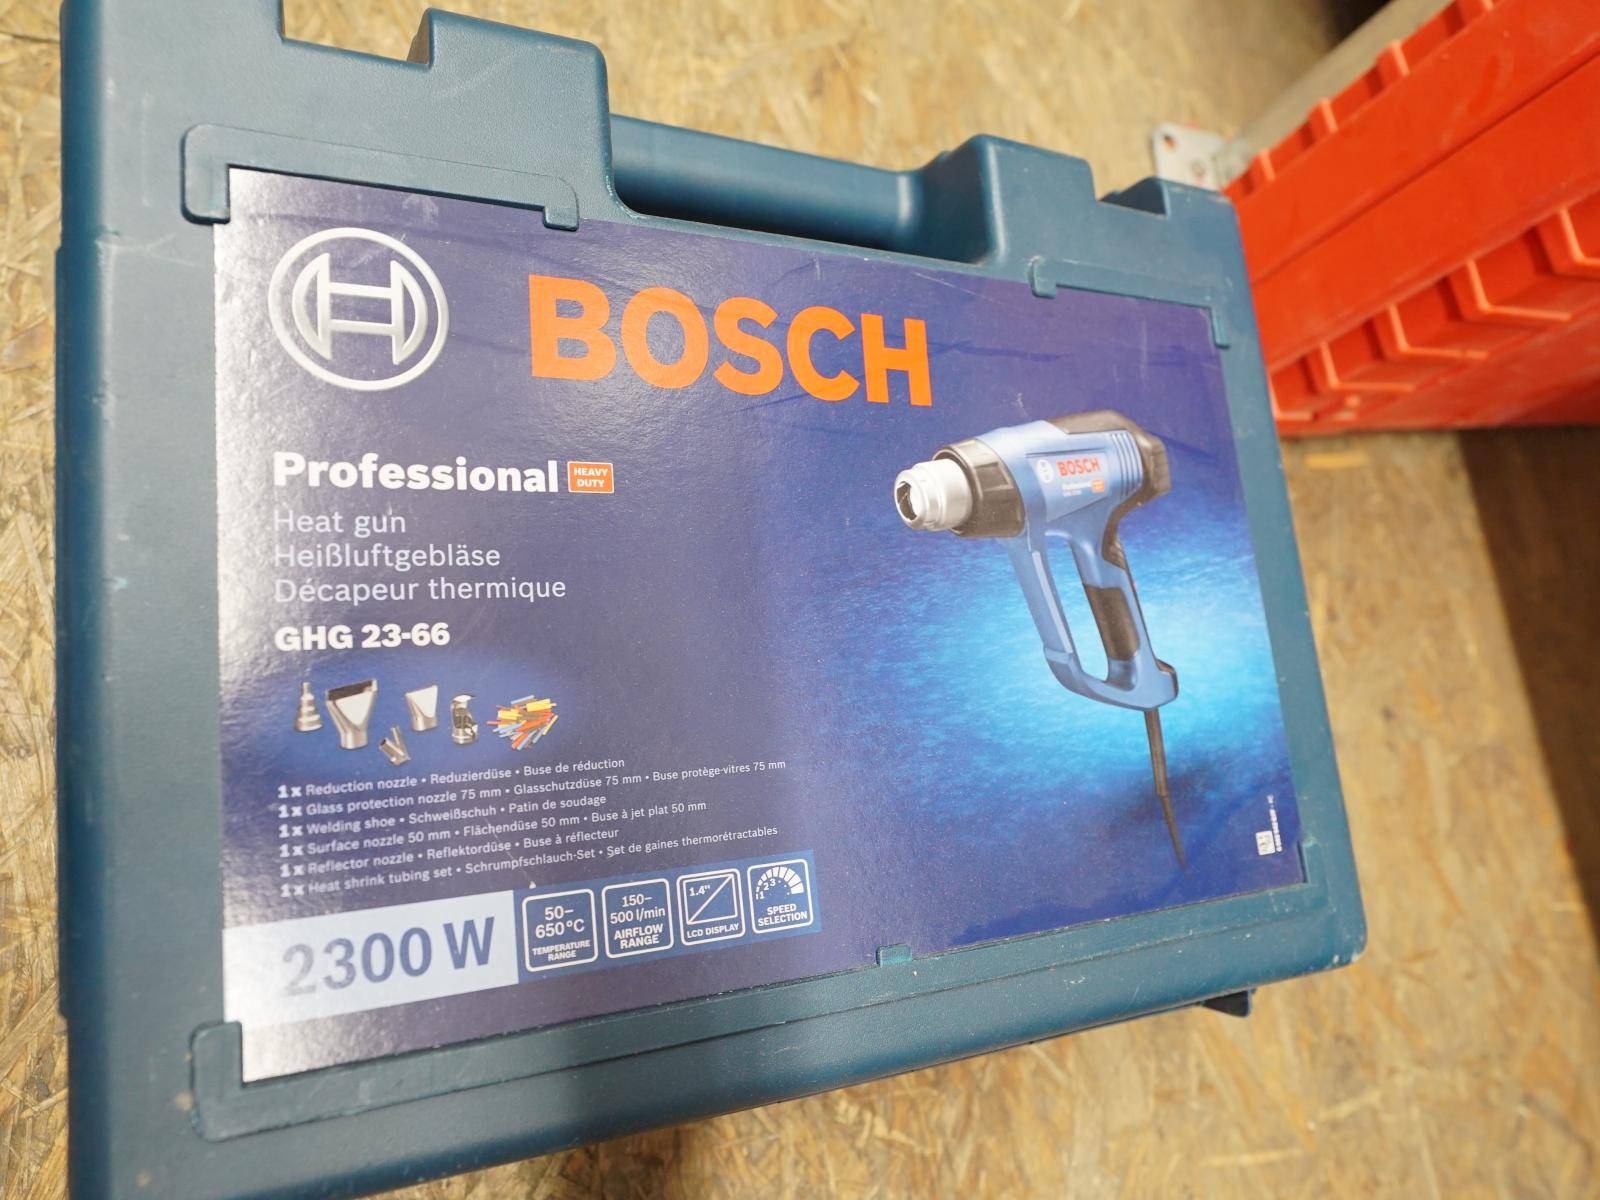 Décapeur thermique Bosch GHG 23-66 